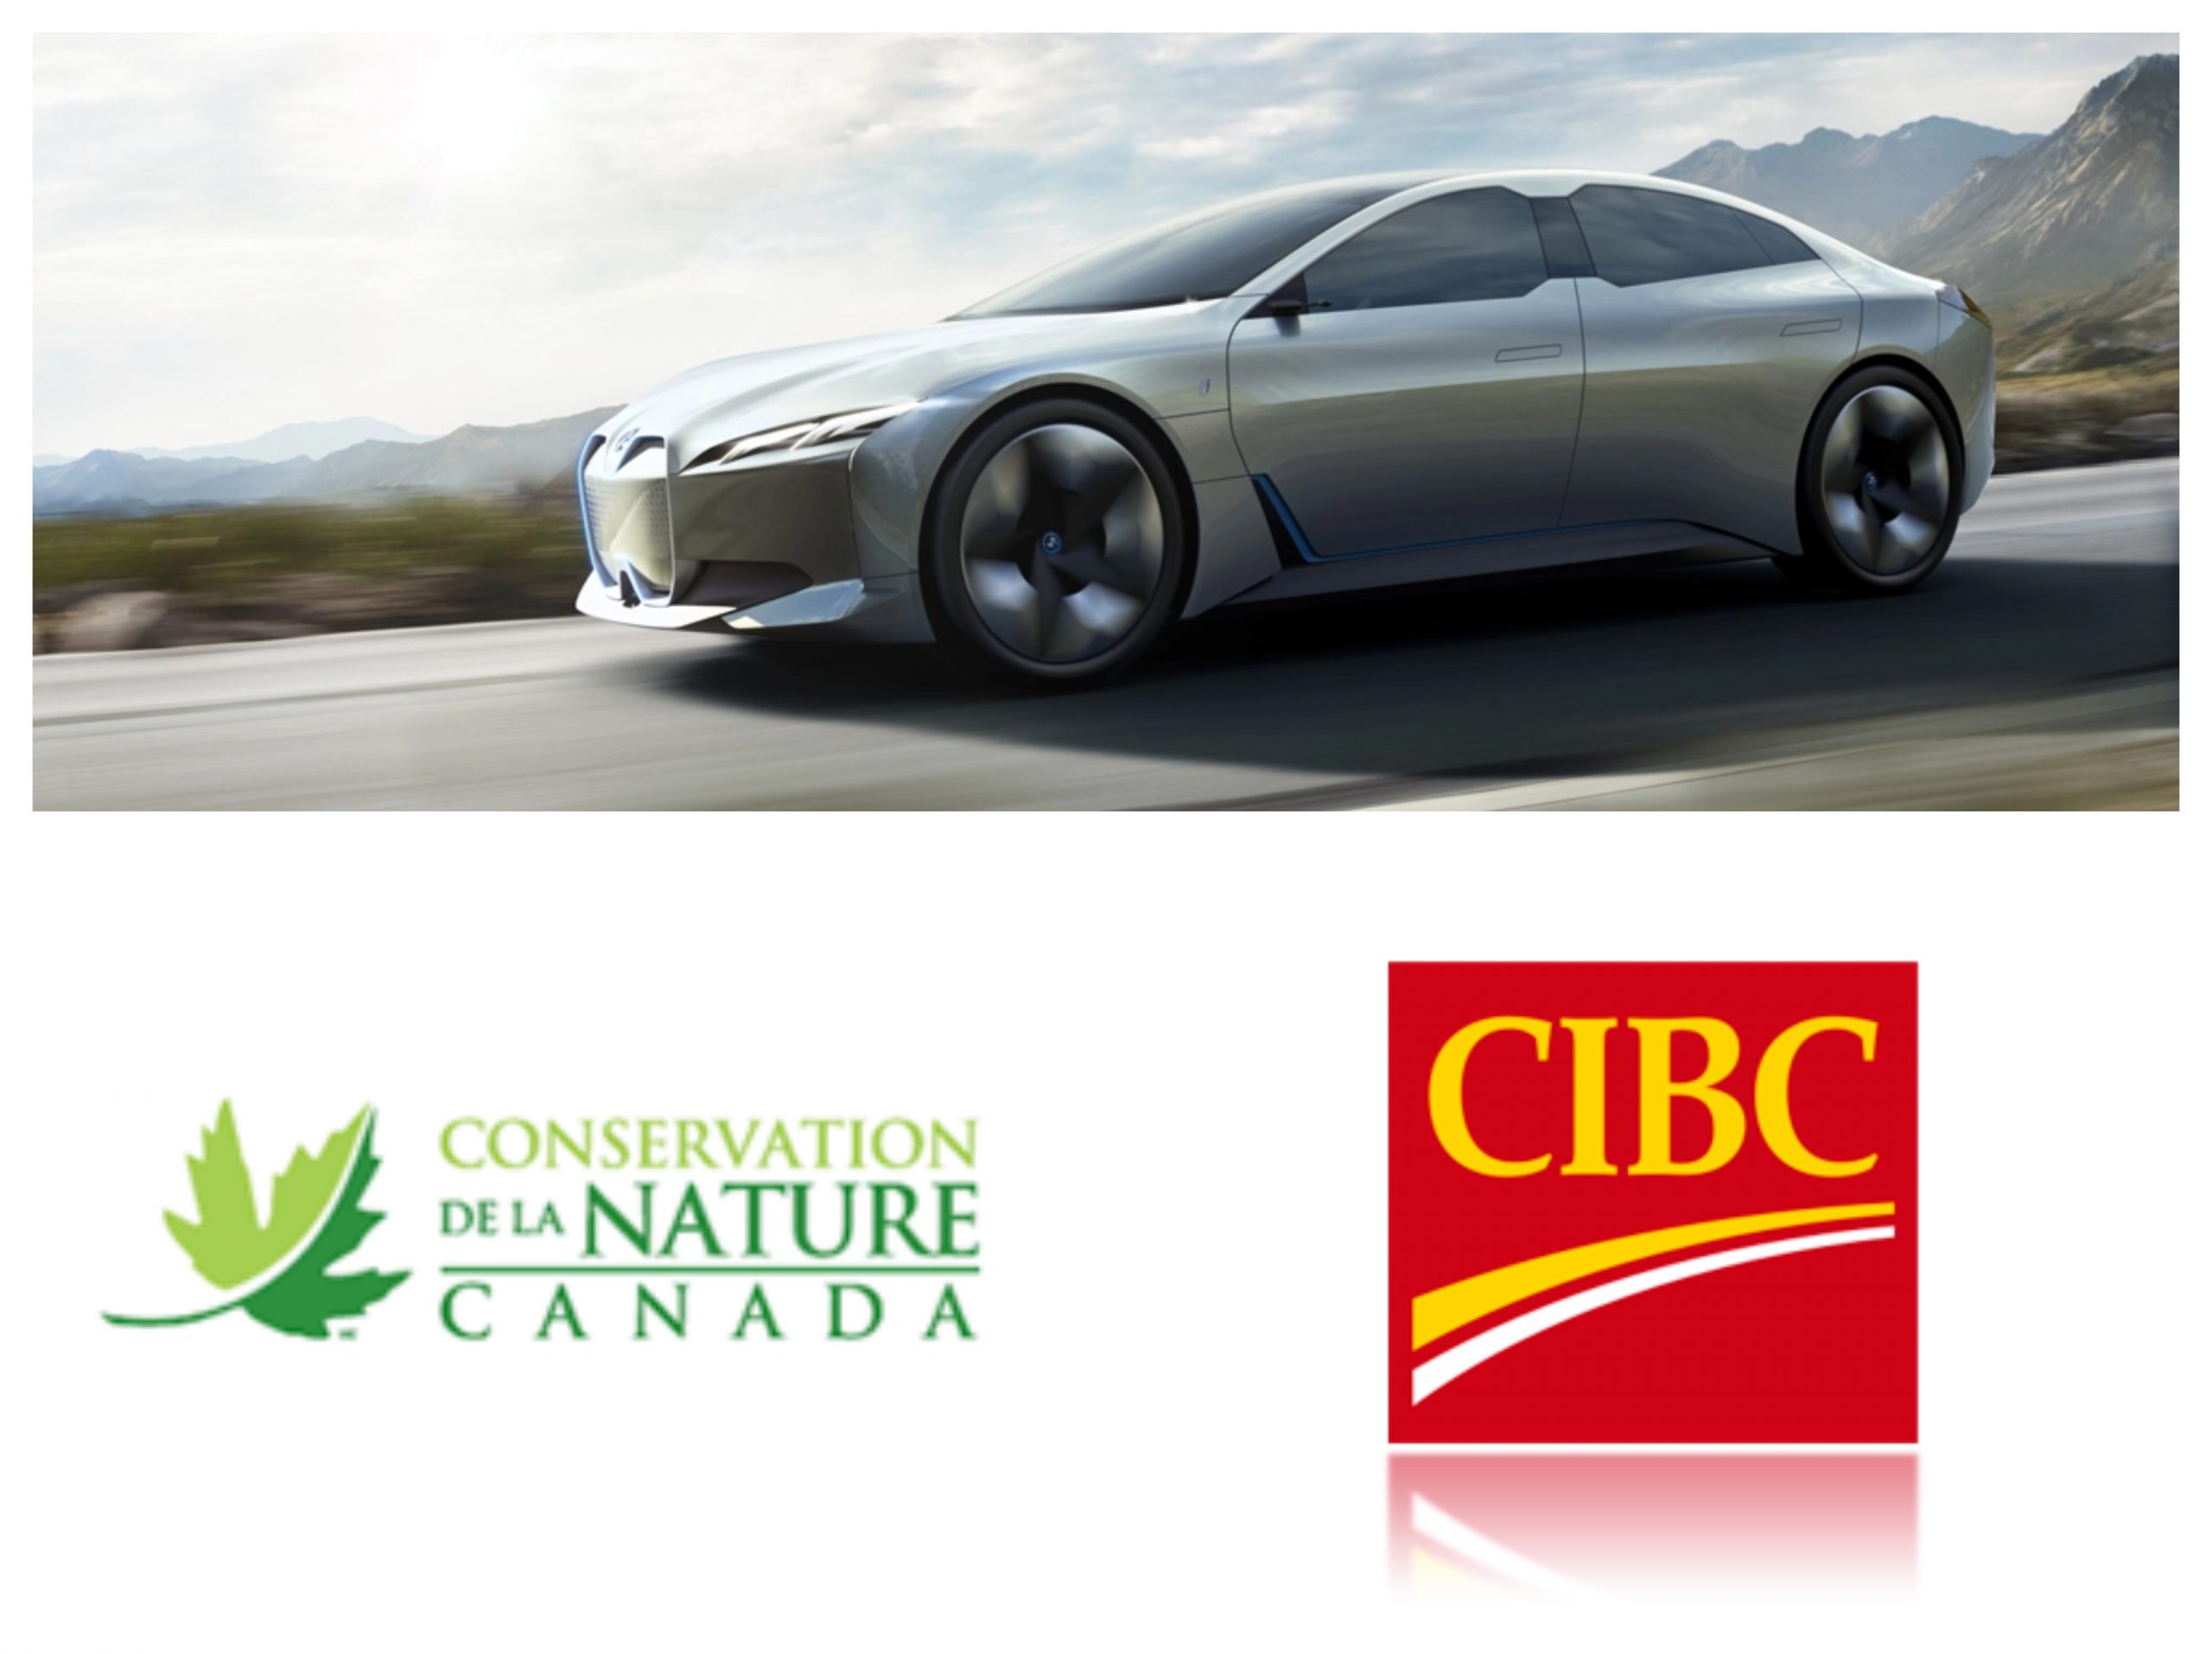 CIBC - Conservation de la Nature Canada